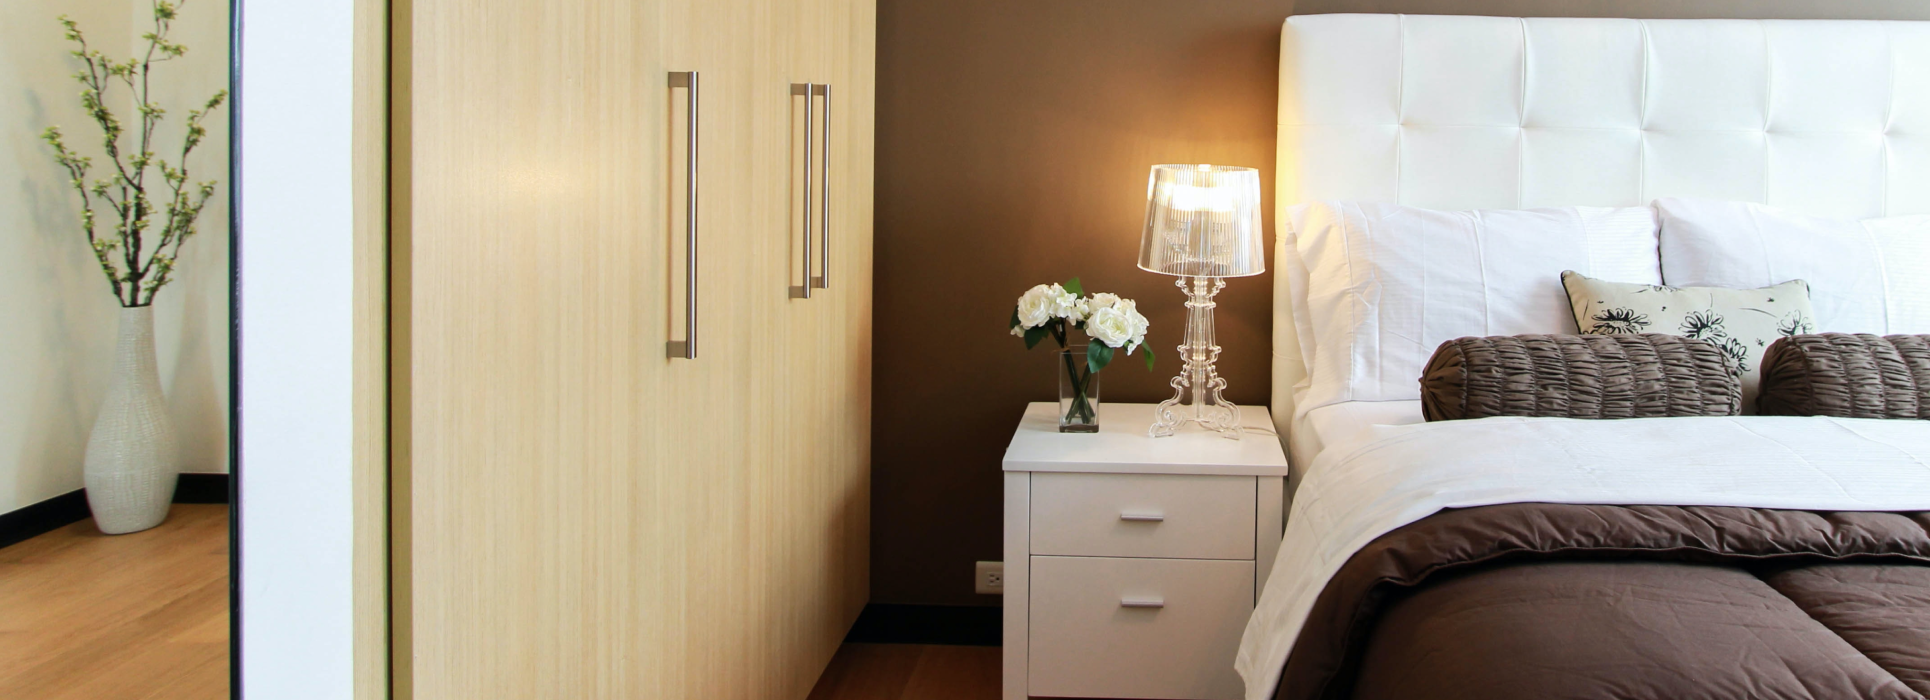 Ideas de iluminación de dormitorio: cree una iluminación de dormitorio moderna con dispositivos inteligentes